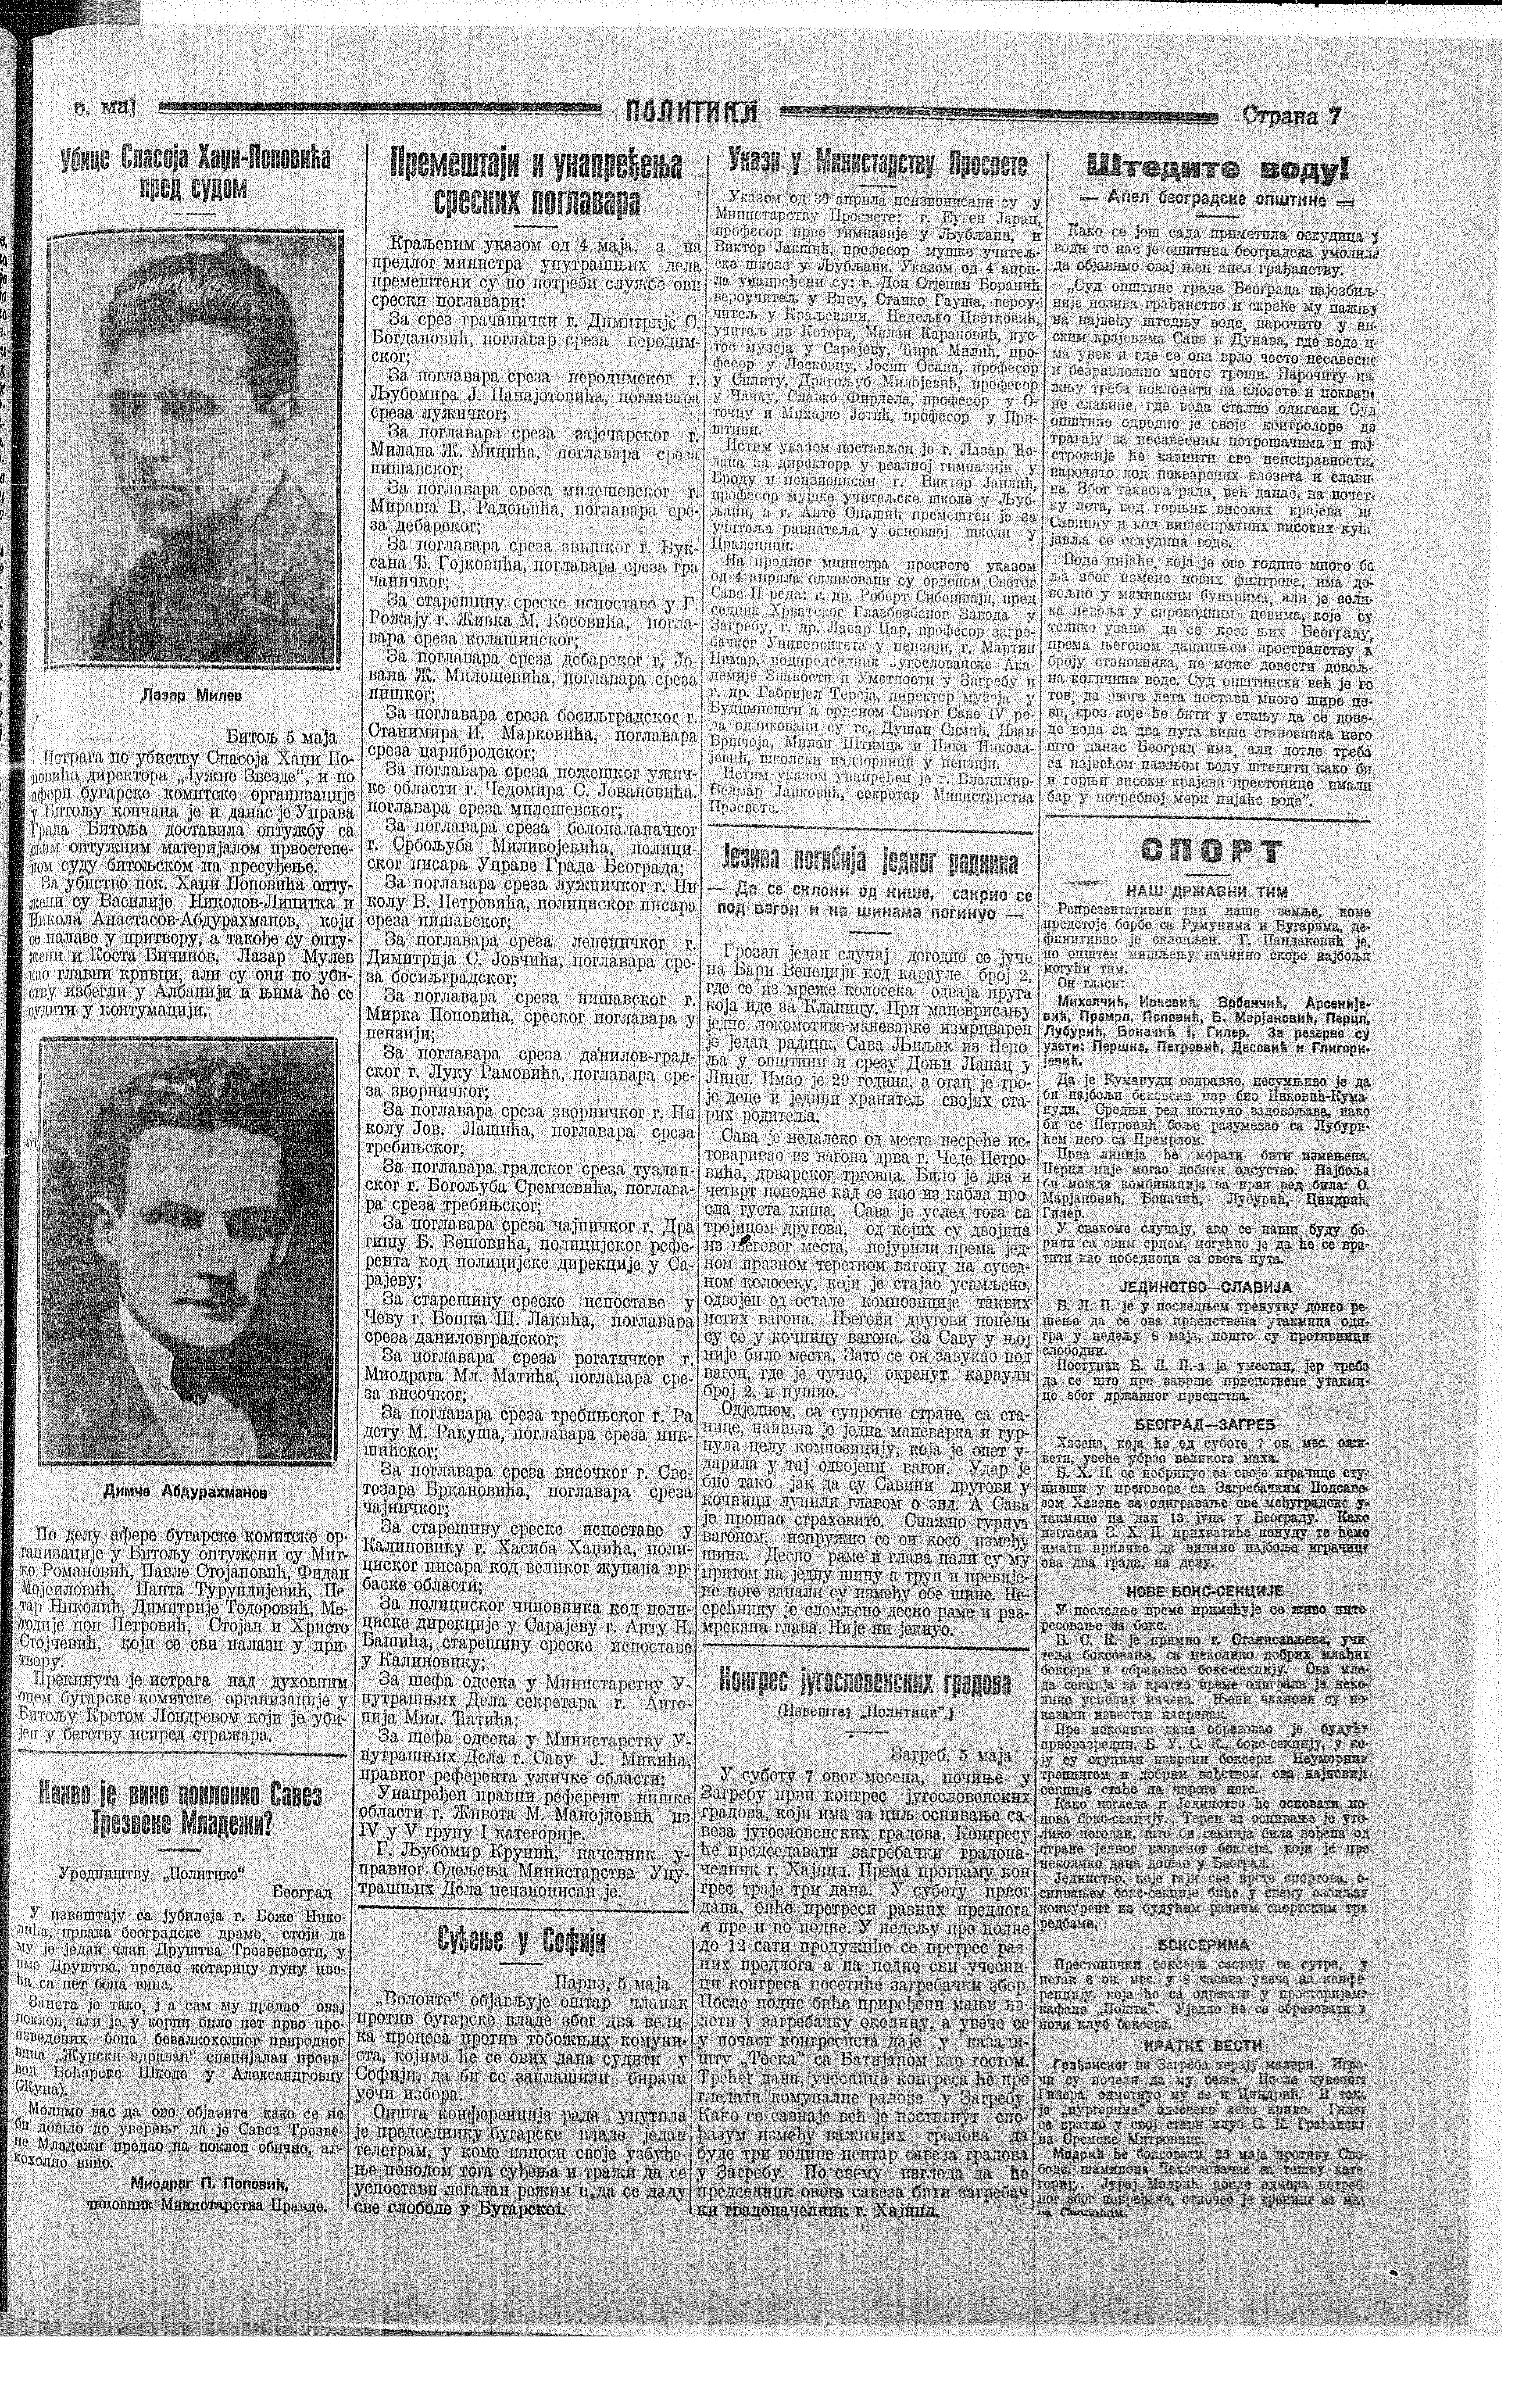 Suđenje ubicama Hadži-Popovića, Politika, 06.05.1927.